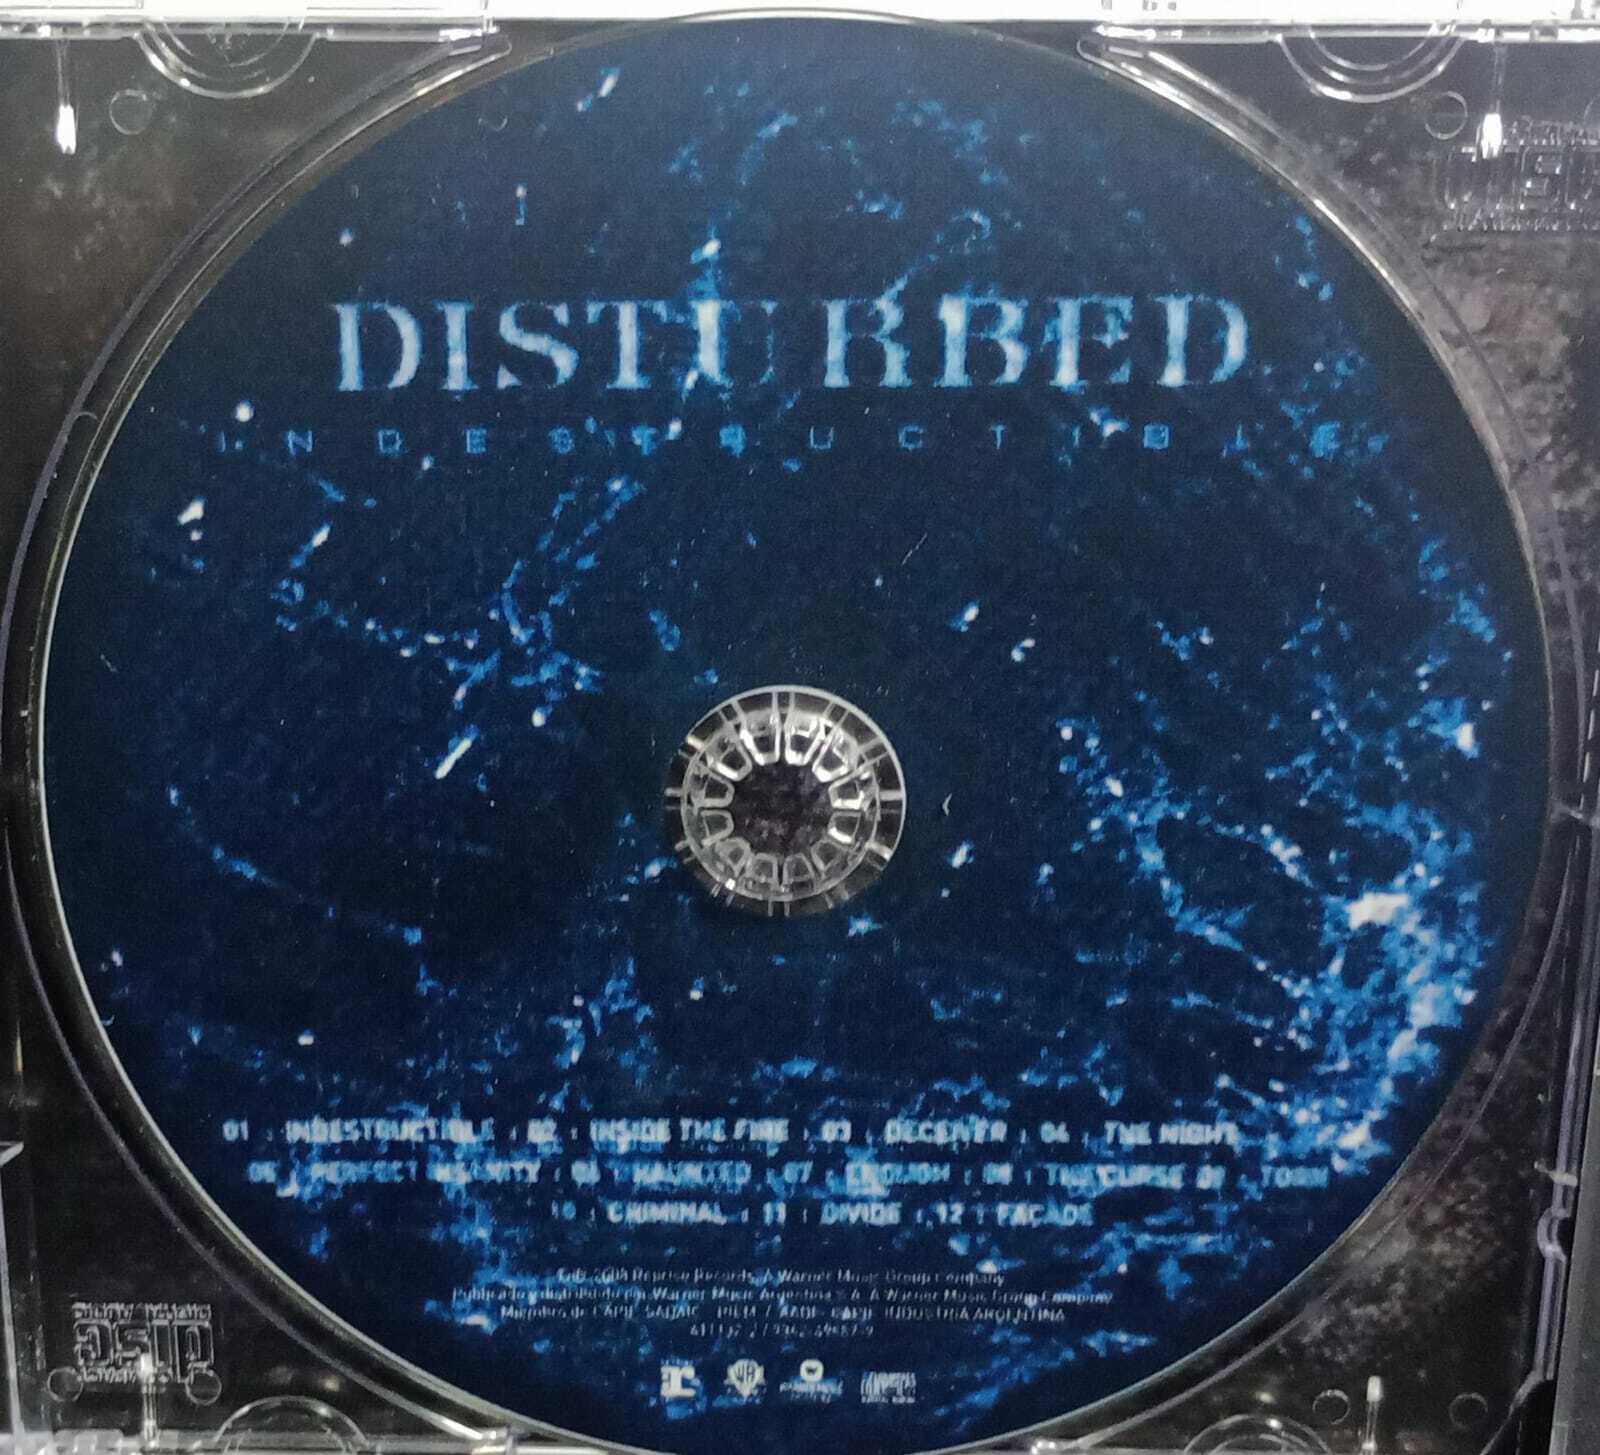 CD - Disturbed - Indestructible (imp)